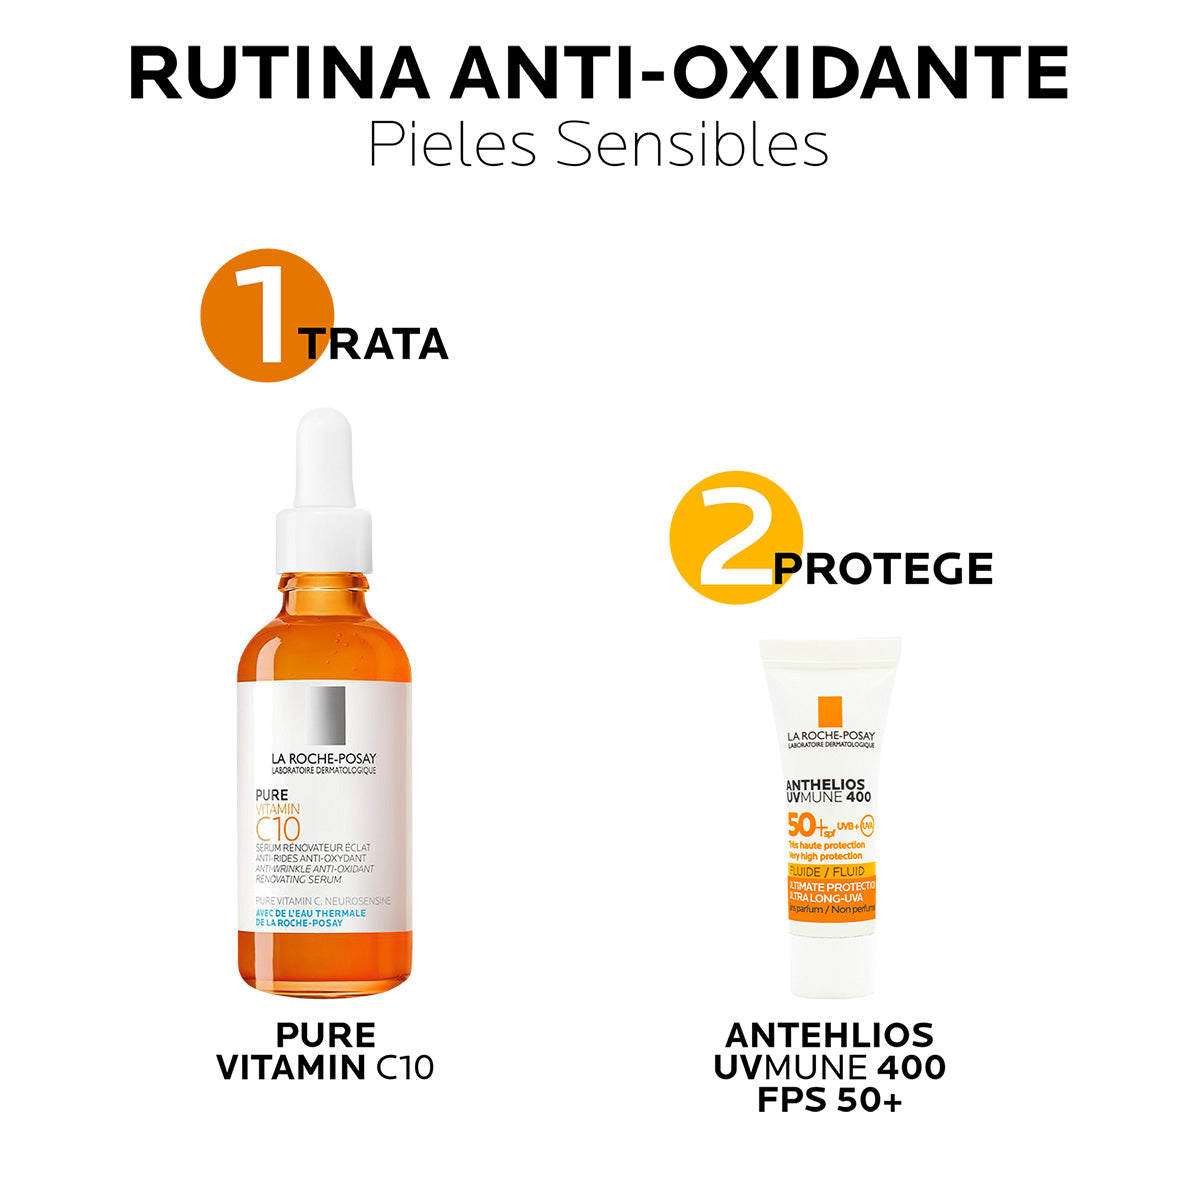 La Roche Posay Kit renovador y anti-oxidante con vitamine C10.